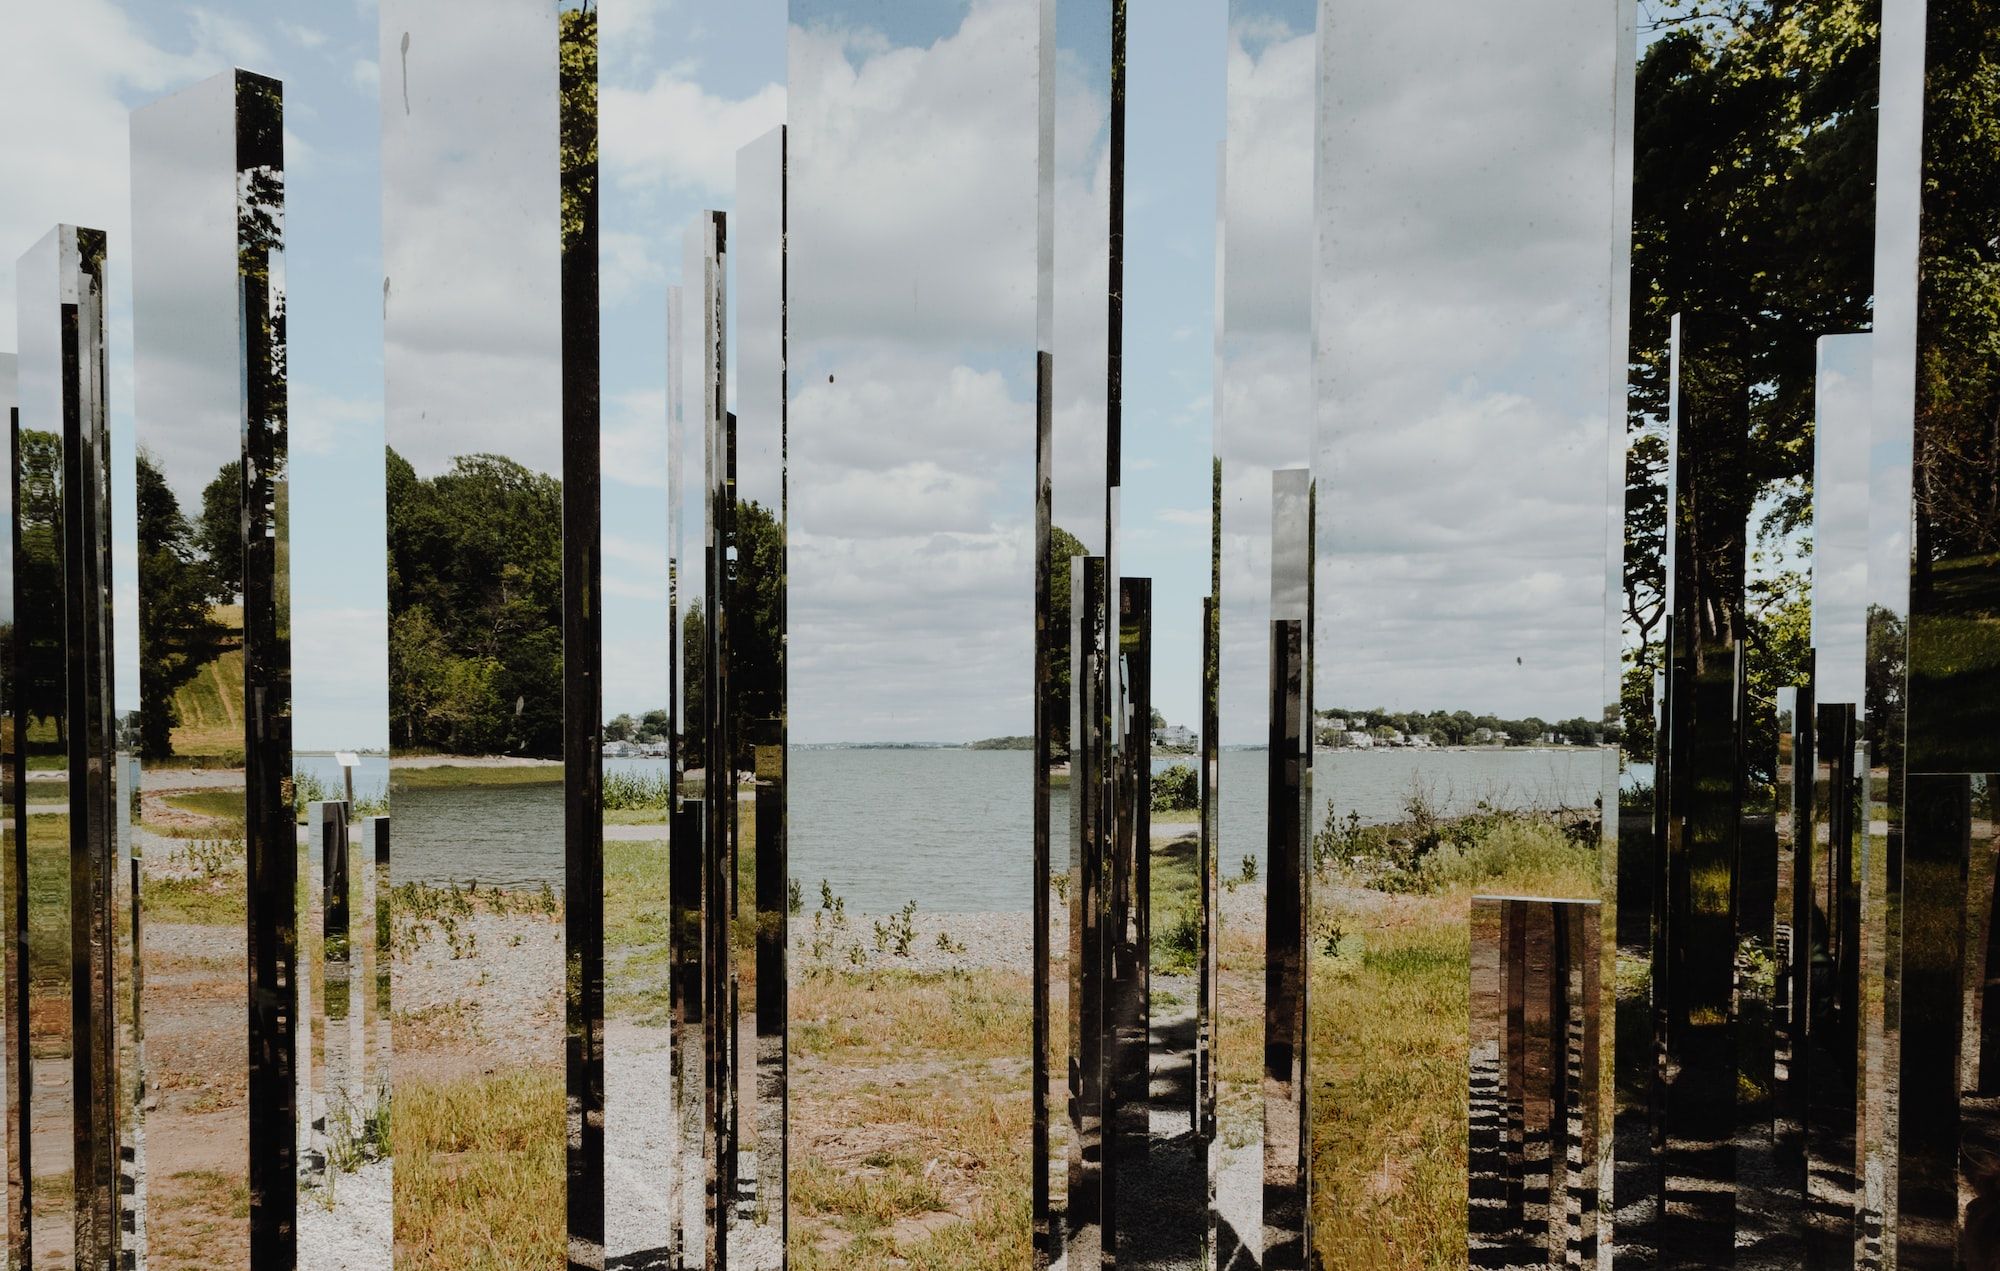 réflexion de la nature dans des fragments de miroirs - Photo by Kelly Sikkema on Unsplash